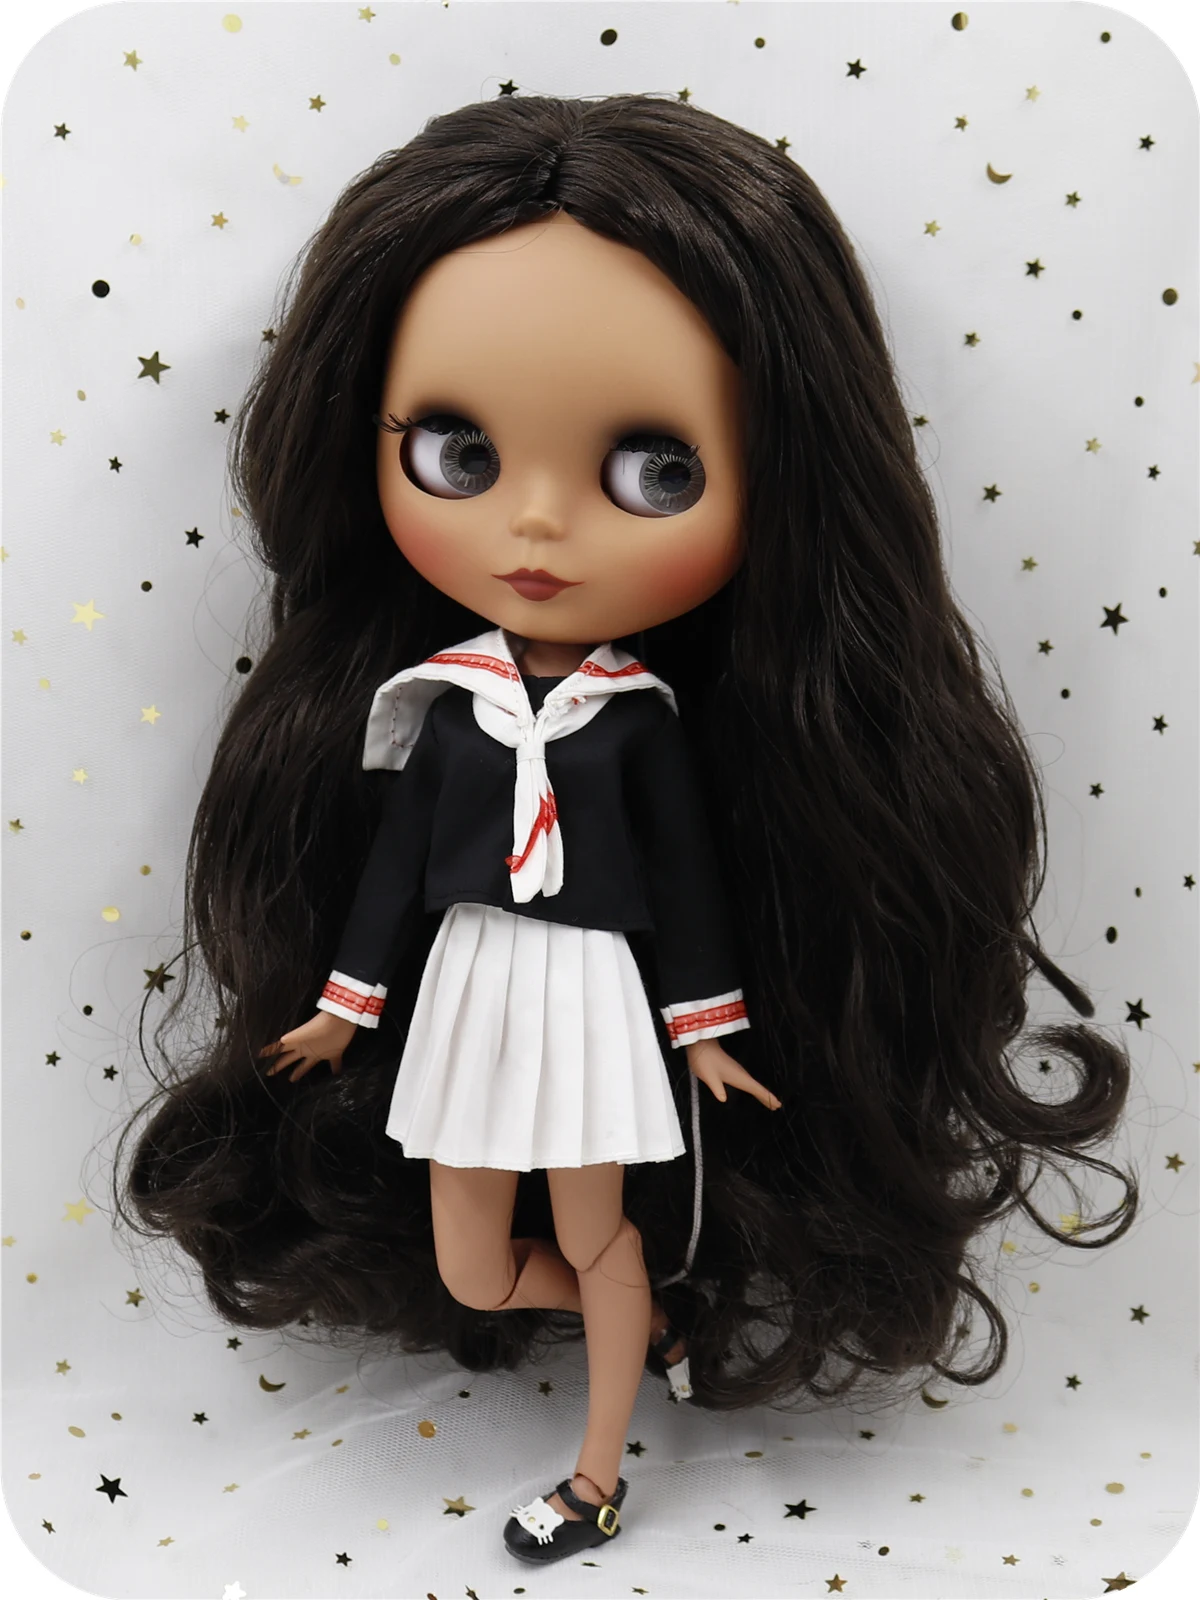 Caroline – Personalizzato Premium Neo Blythe Doll con capelli castani, pelle scura e viso carino opaco 2